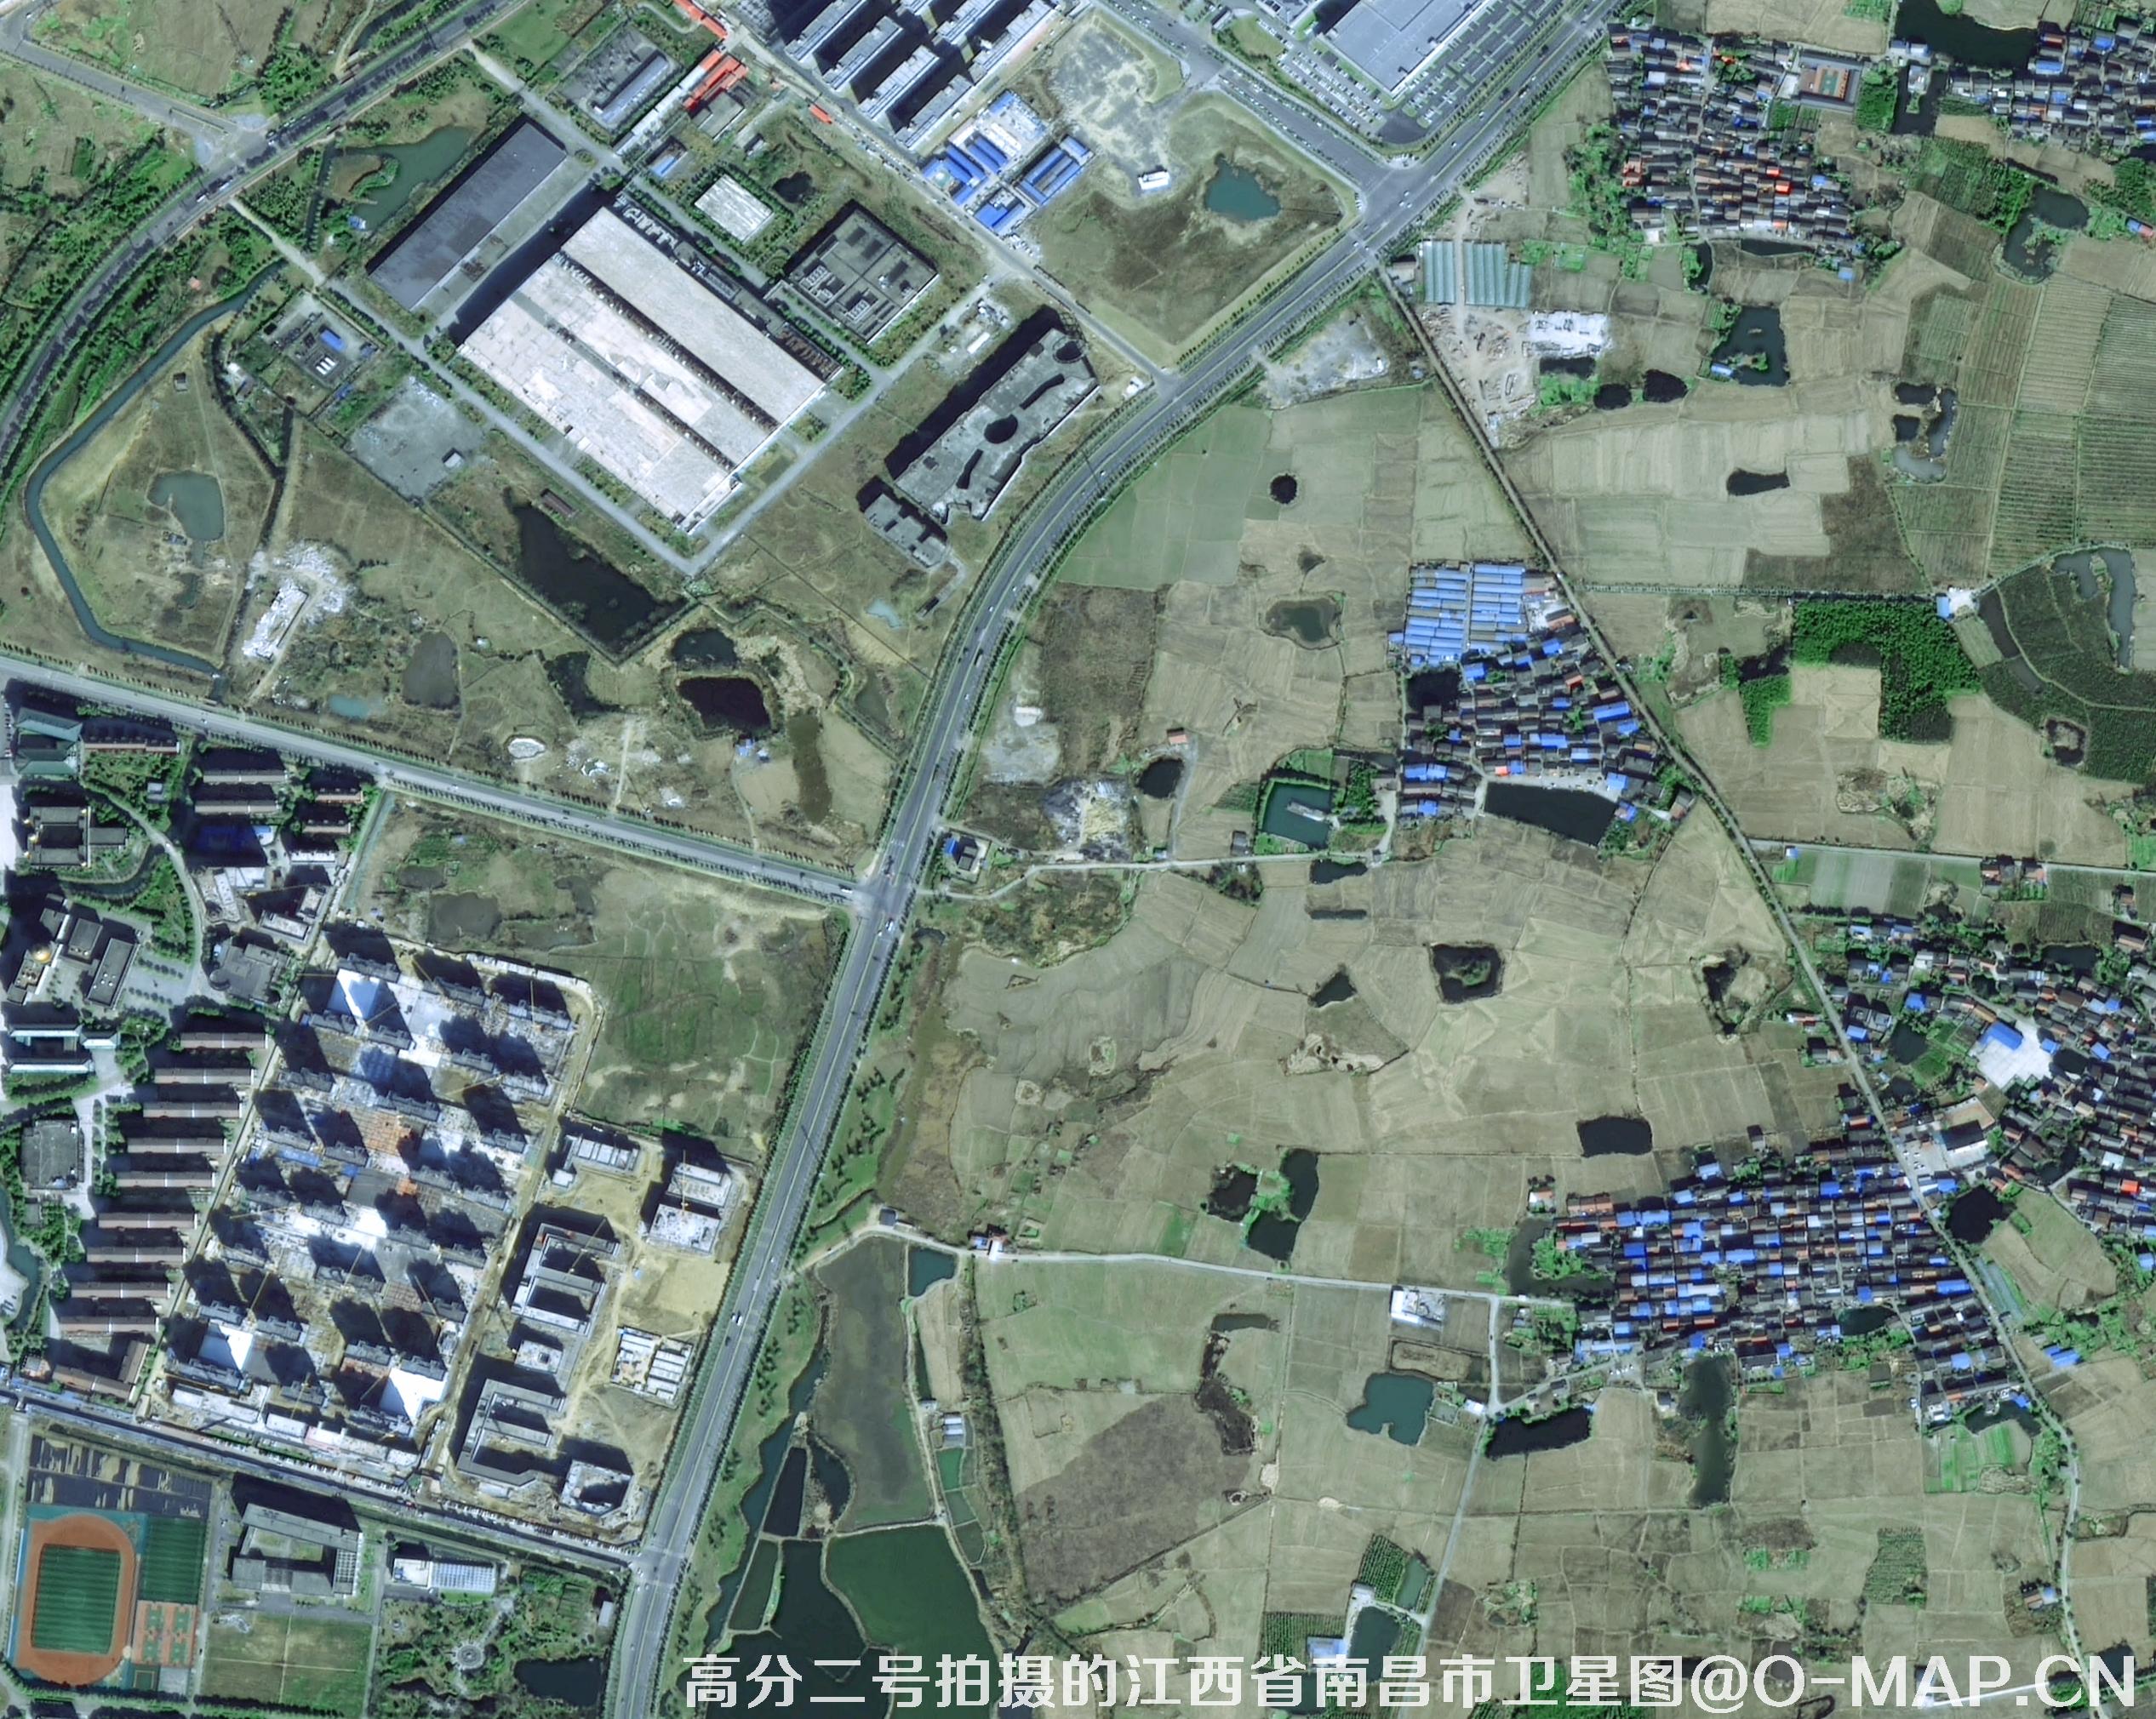 0.8米分辨率卫星拍摄的地图图片